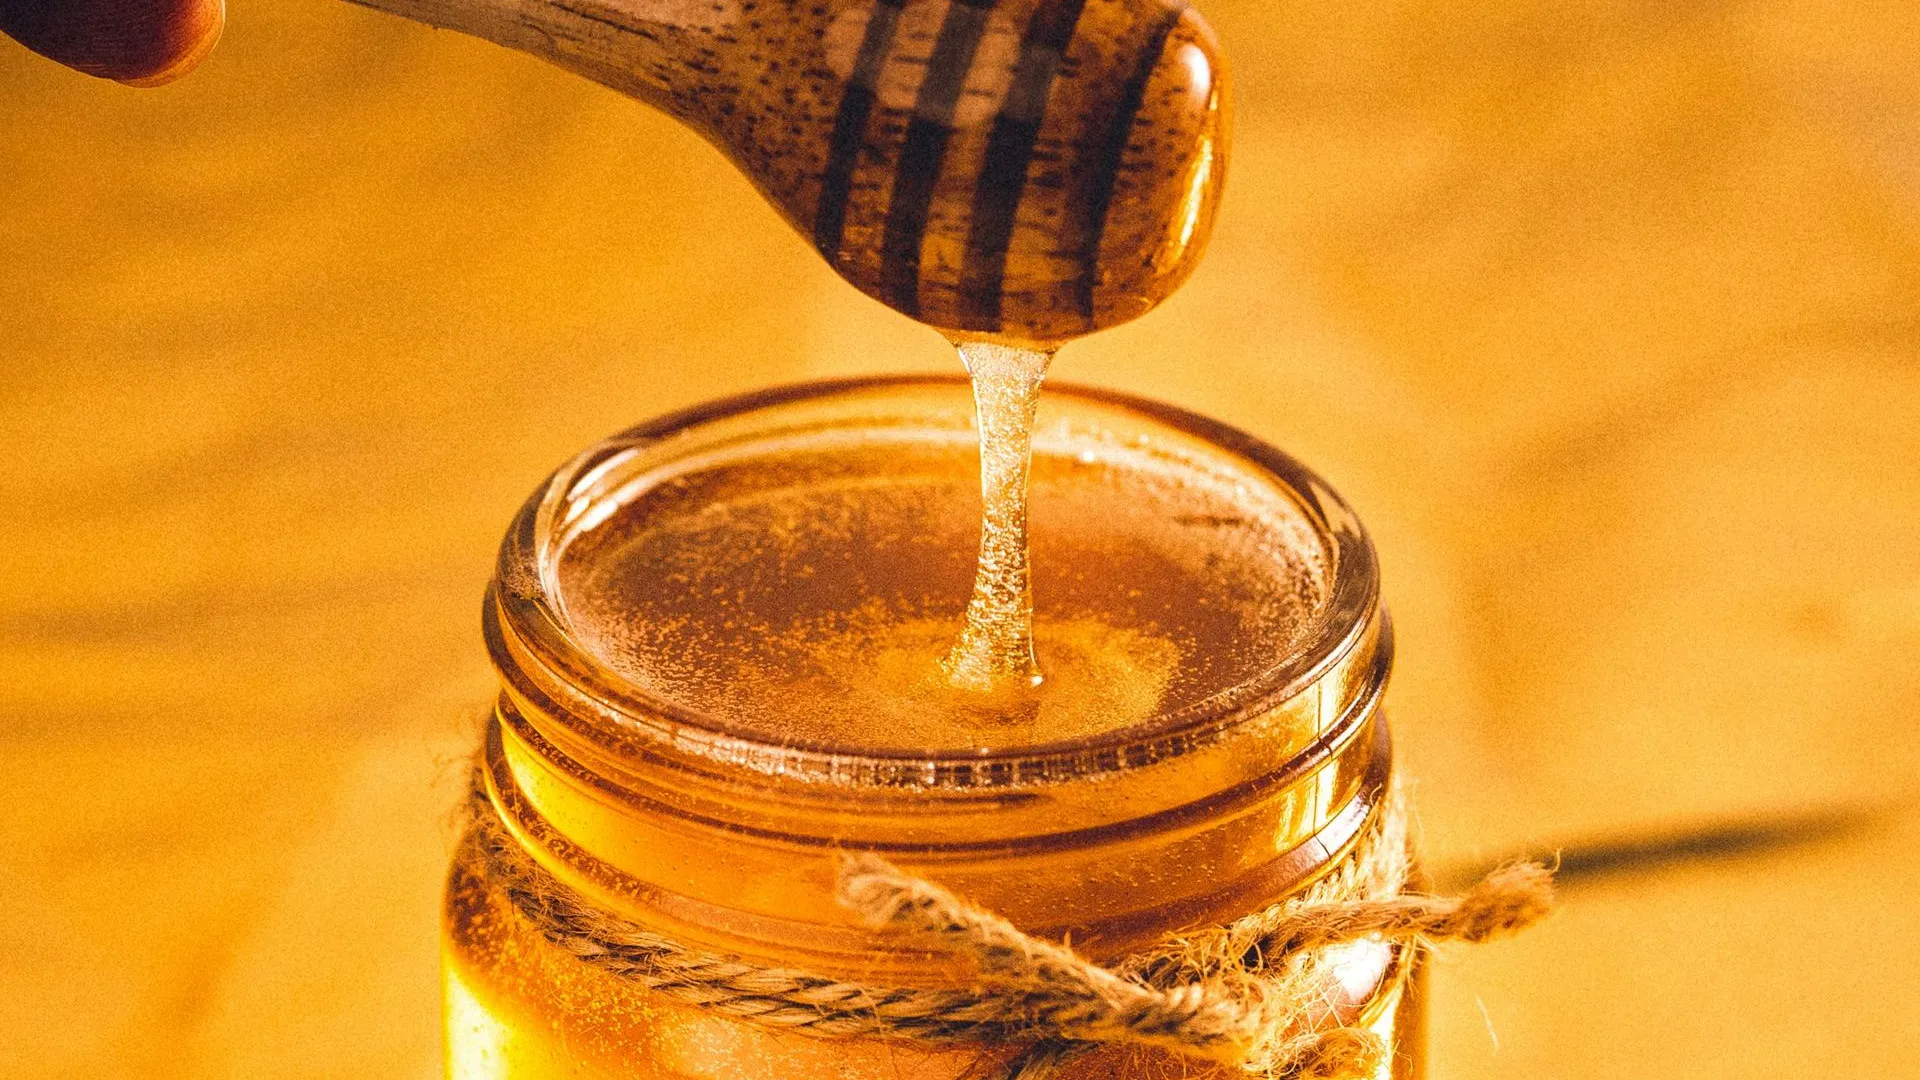 Врач Тананакина: безопасная доза меда — 1-2 столовых ложки в день